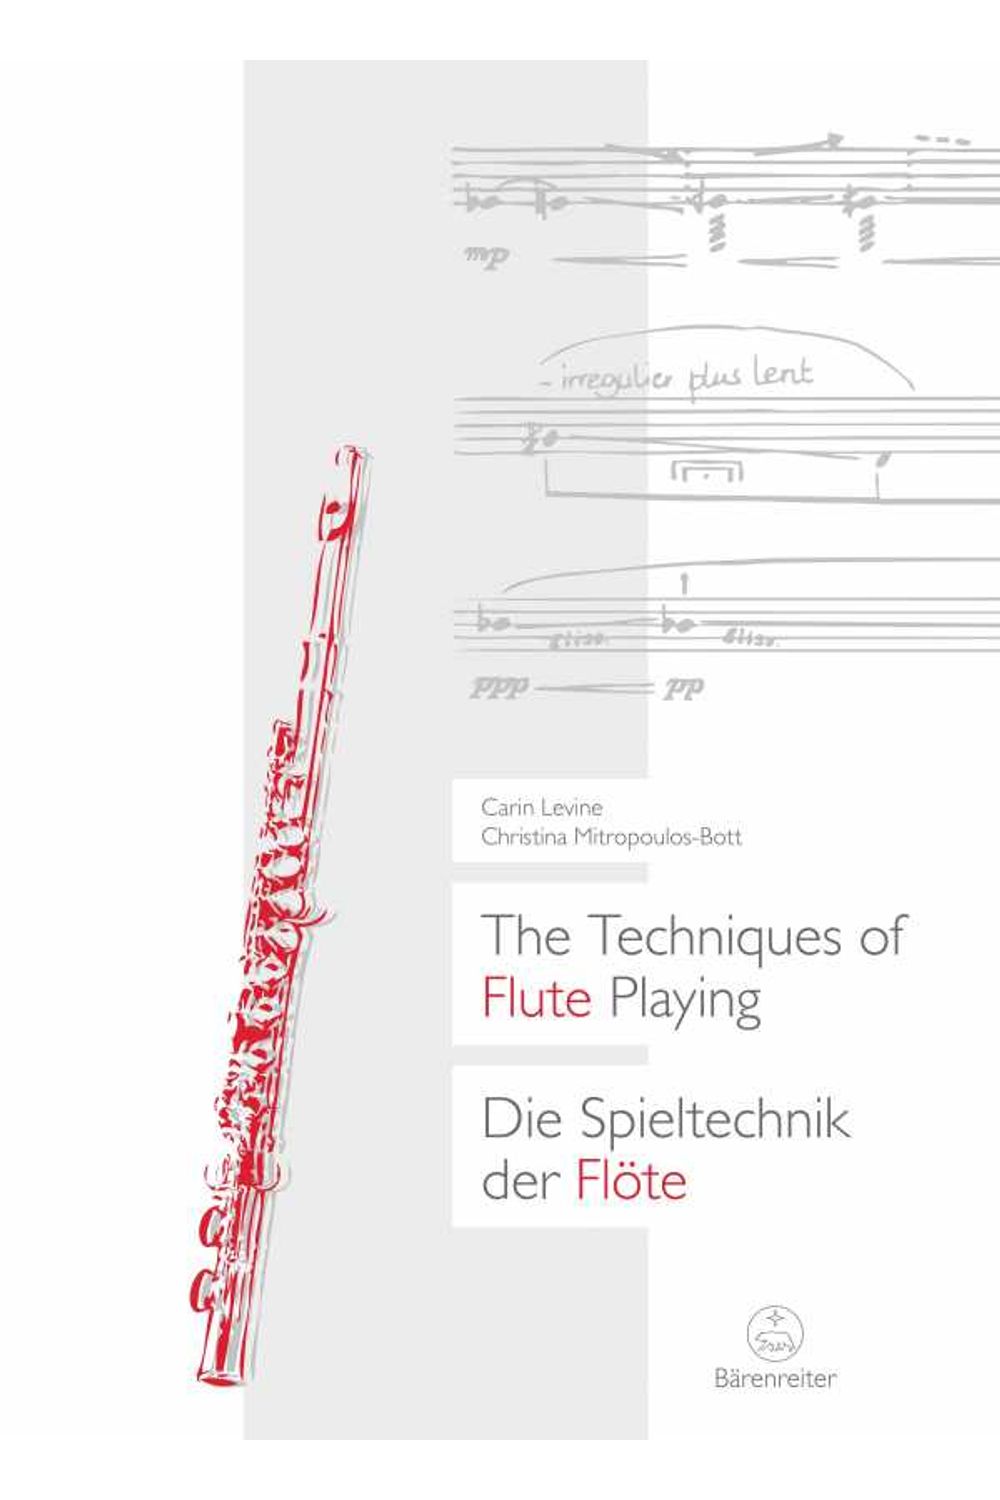 bw-the-techniques-of-flute-playing-i-die-spieltechnik-der-floumlte-i-brenreiterverlag-9783761871584